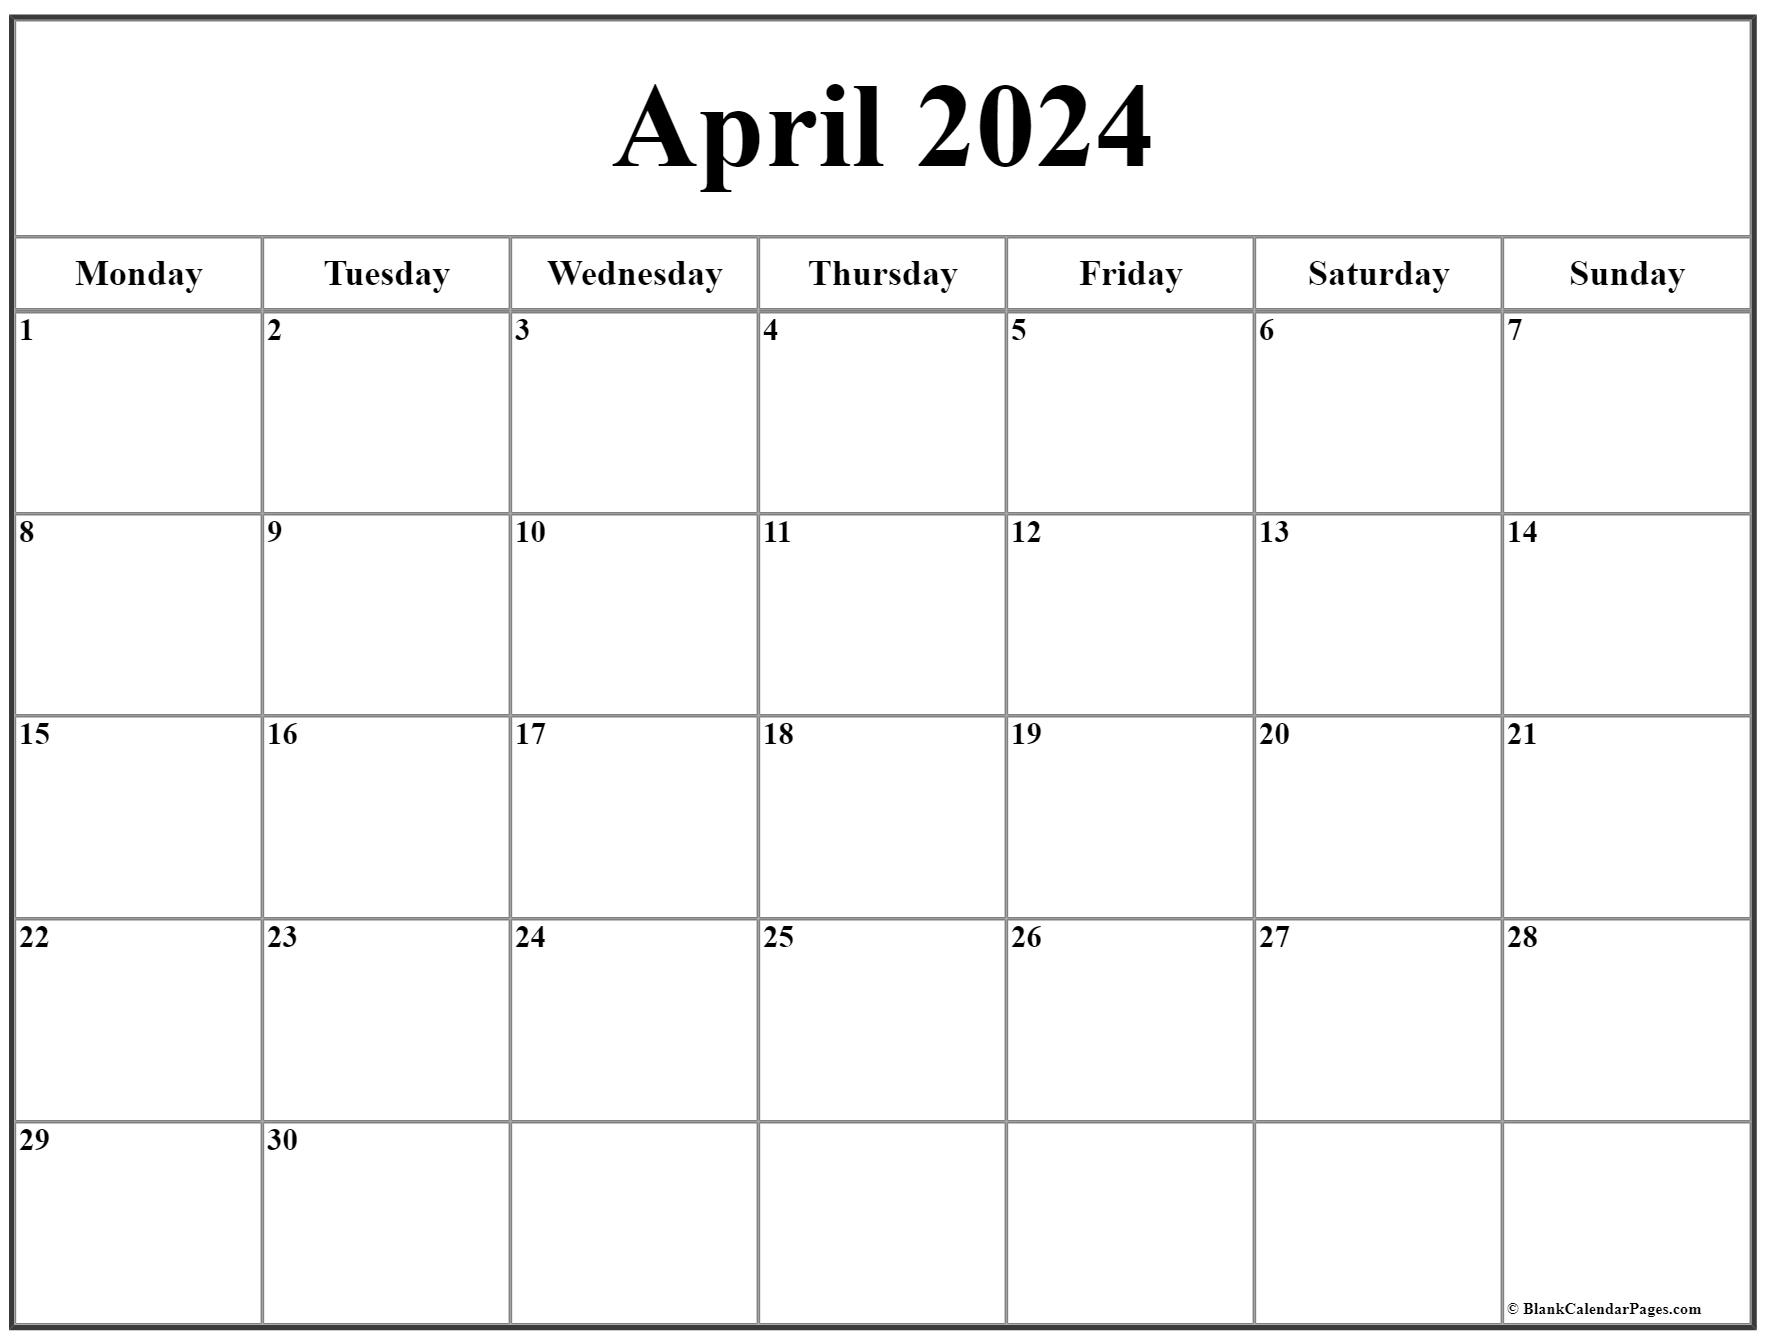 April 2023 Monday Calendar | Monday to Sunday